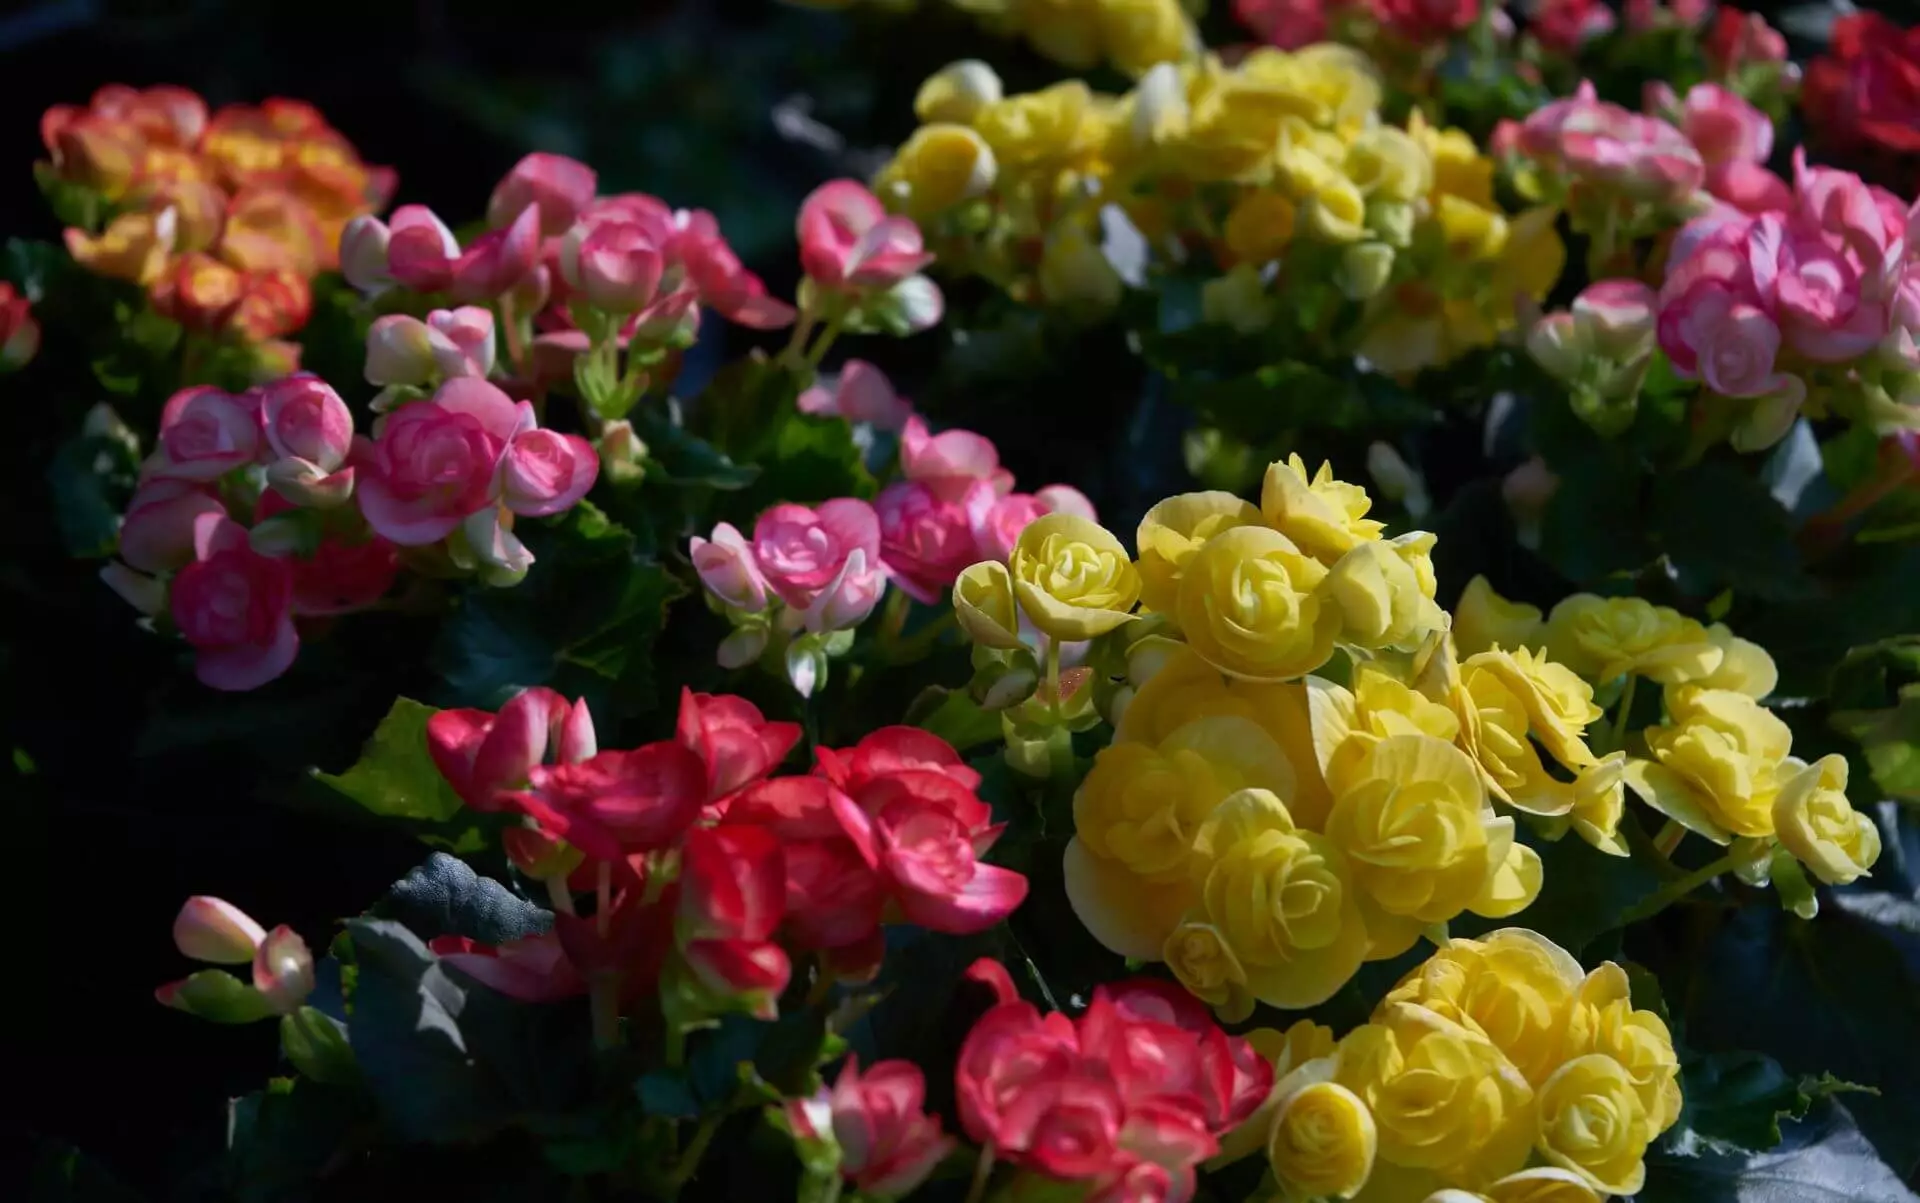 Comment organiser un lit de fleurs avec des roses: 3 règles d'or 7419_4